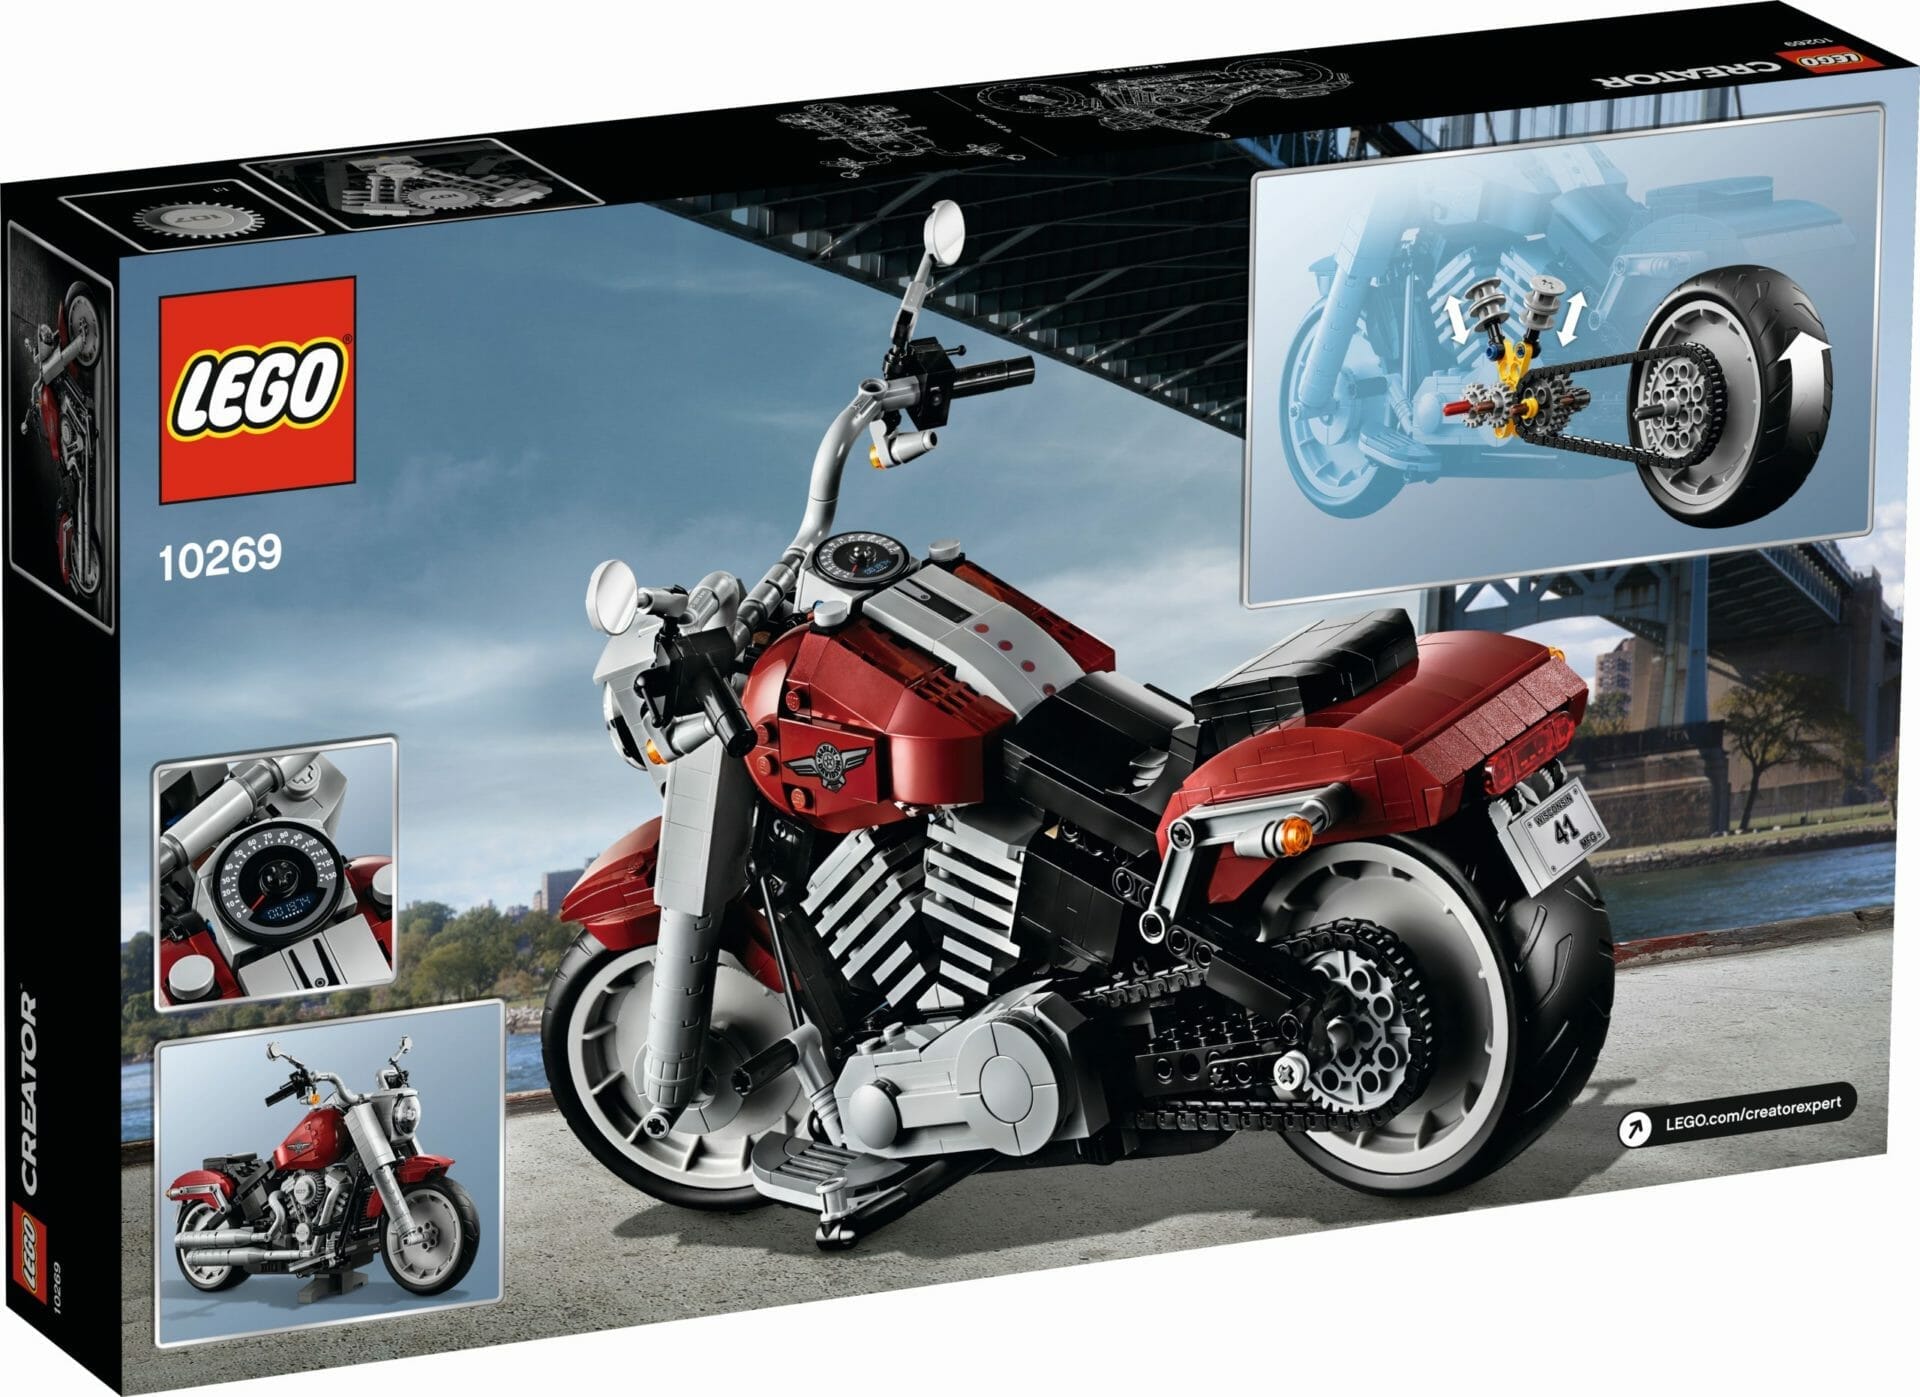 Lego Harley-Davidson Fat Boy
- auch in der MOTORRAD NACHRICHTEN APP